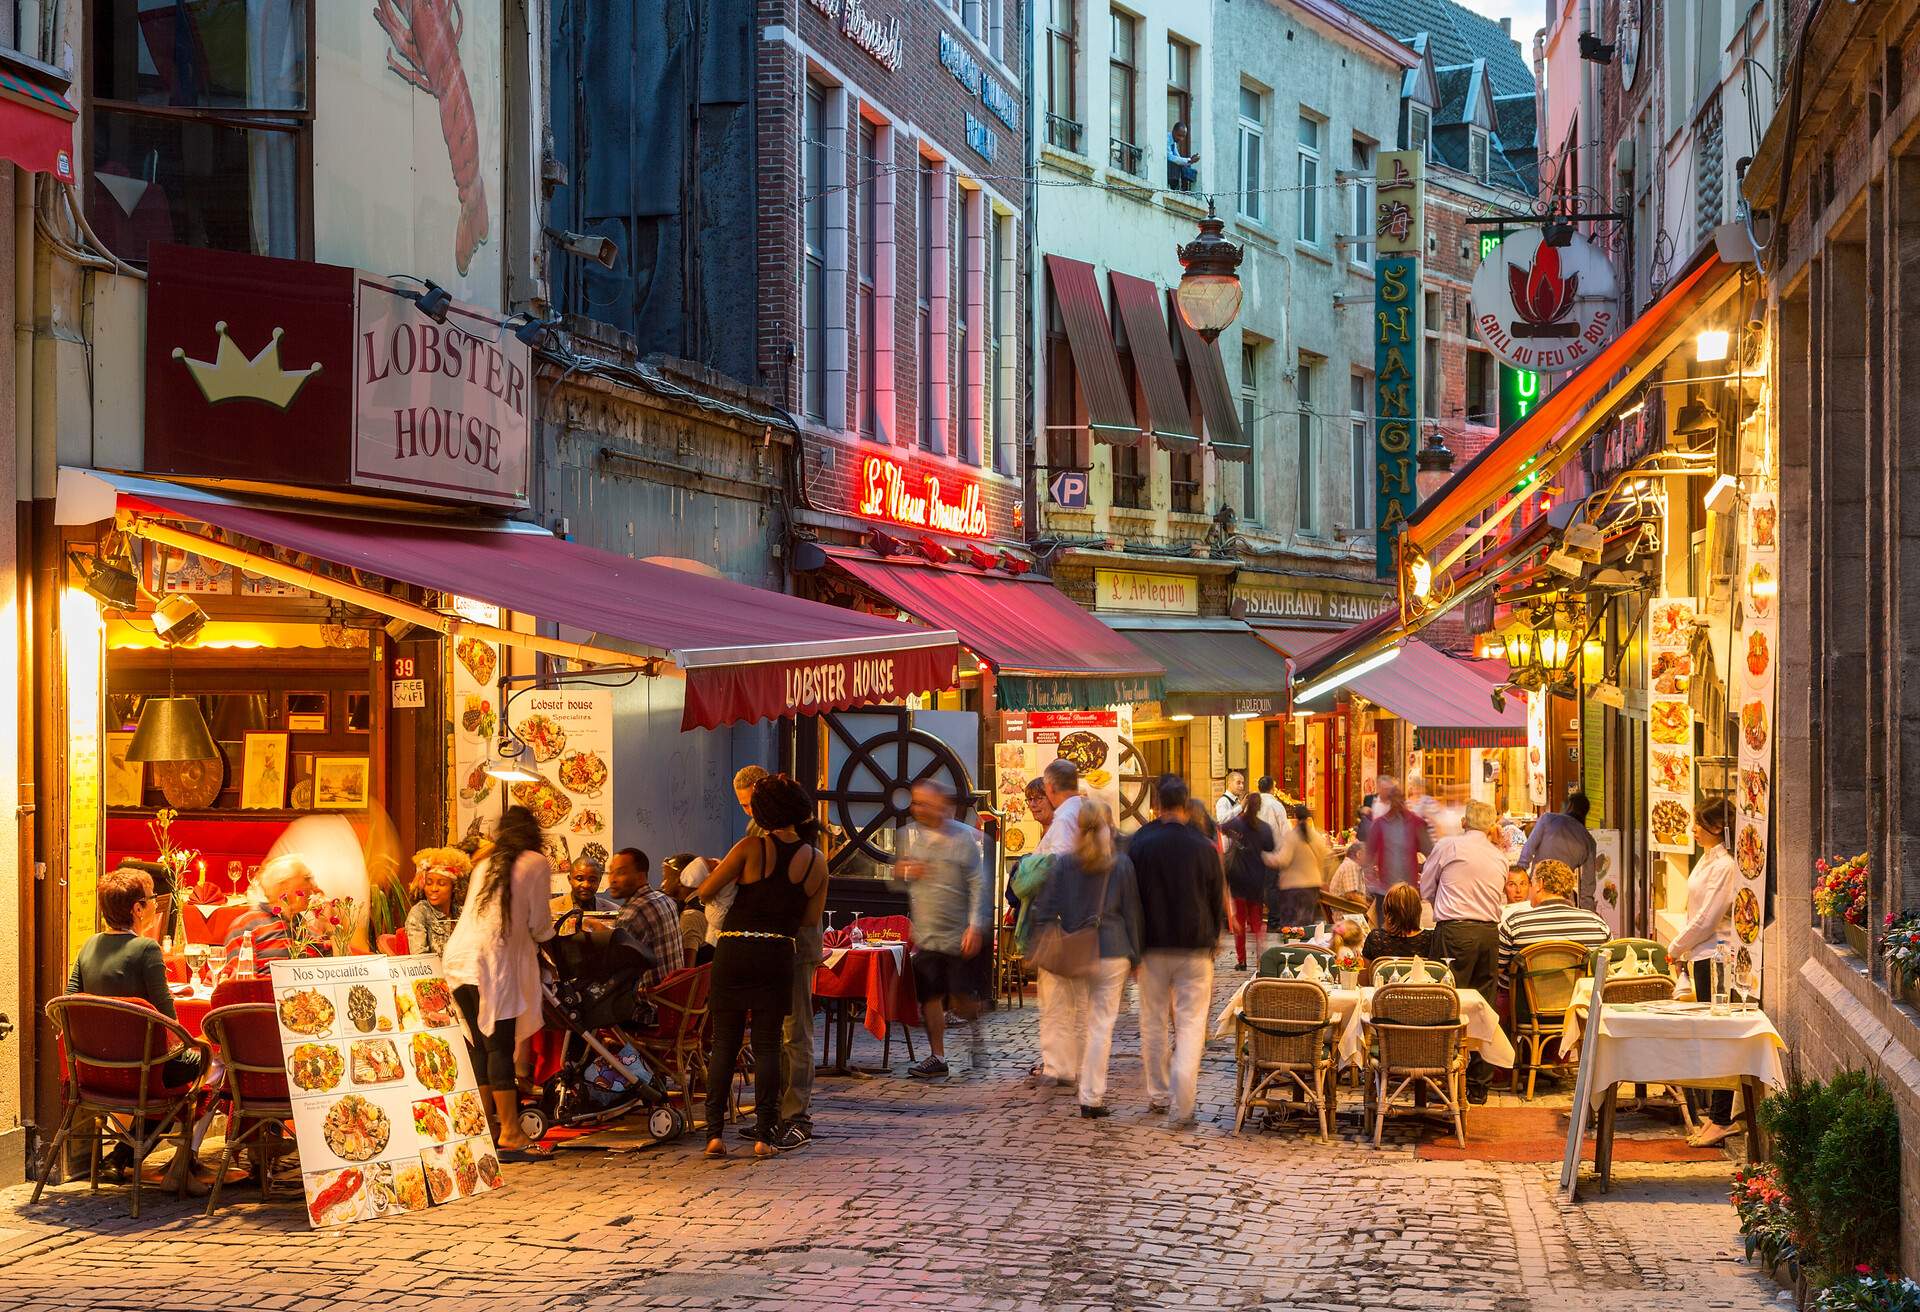 Outdoor dining in narrow street of restaurants, Brussels, Belgium, Europe